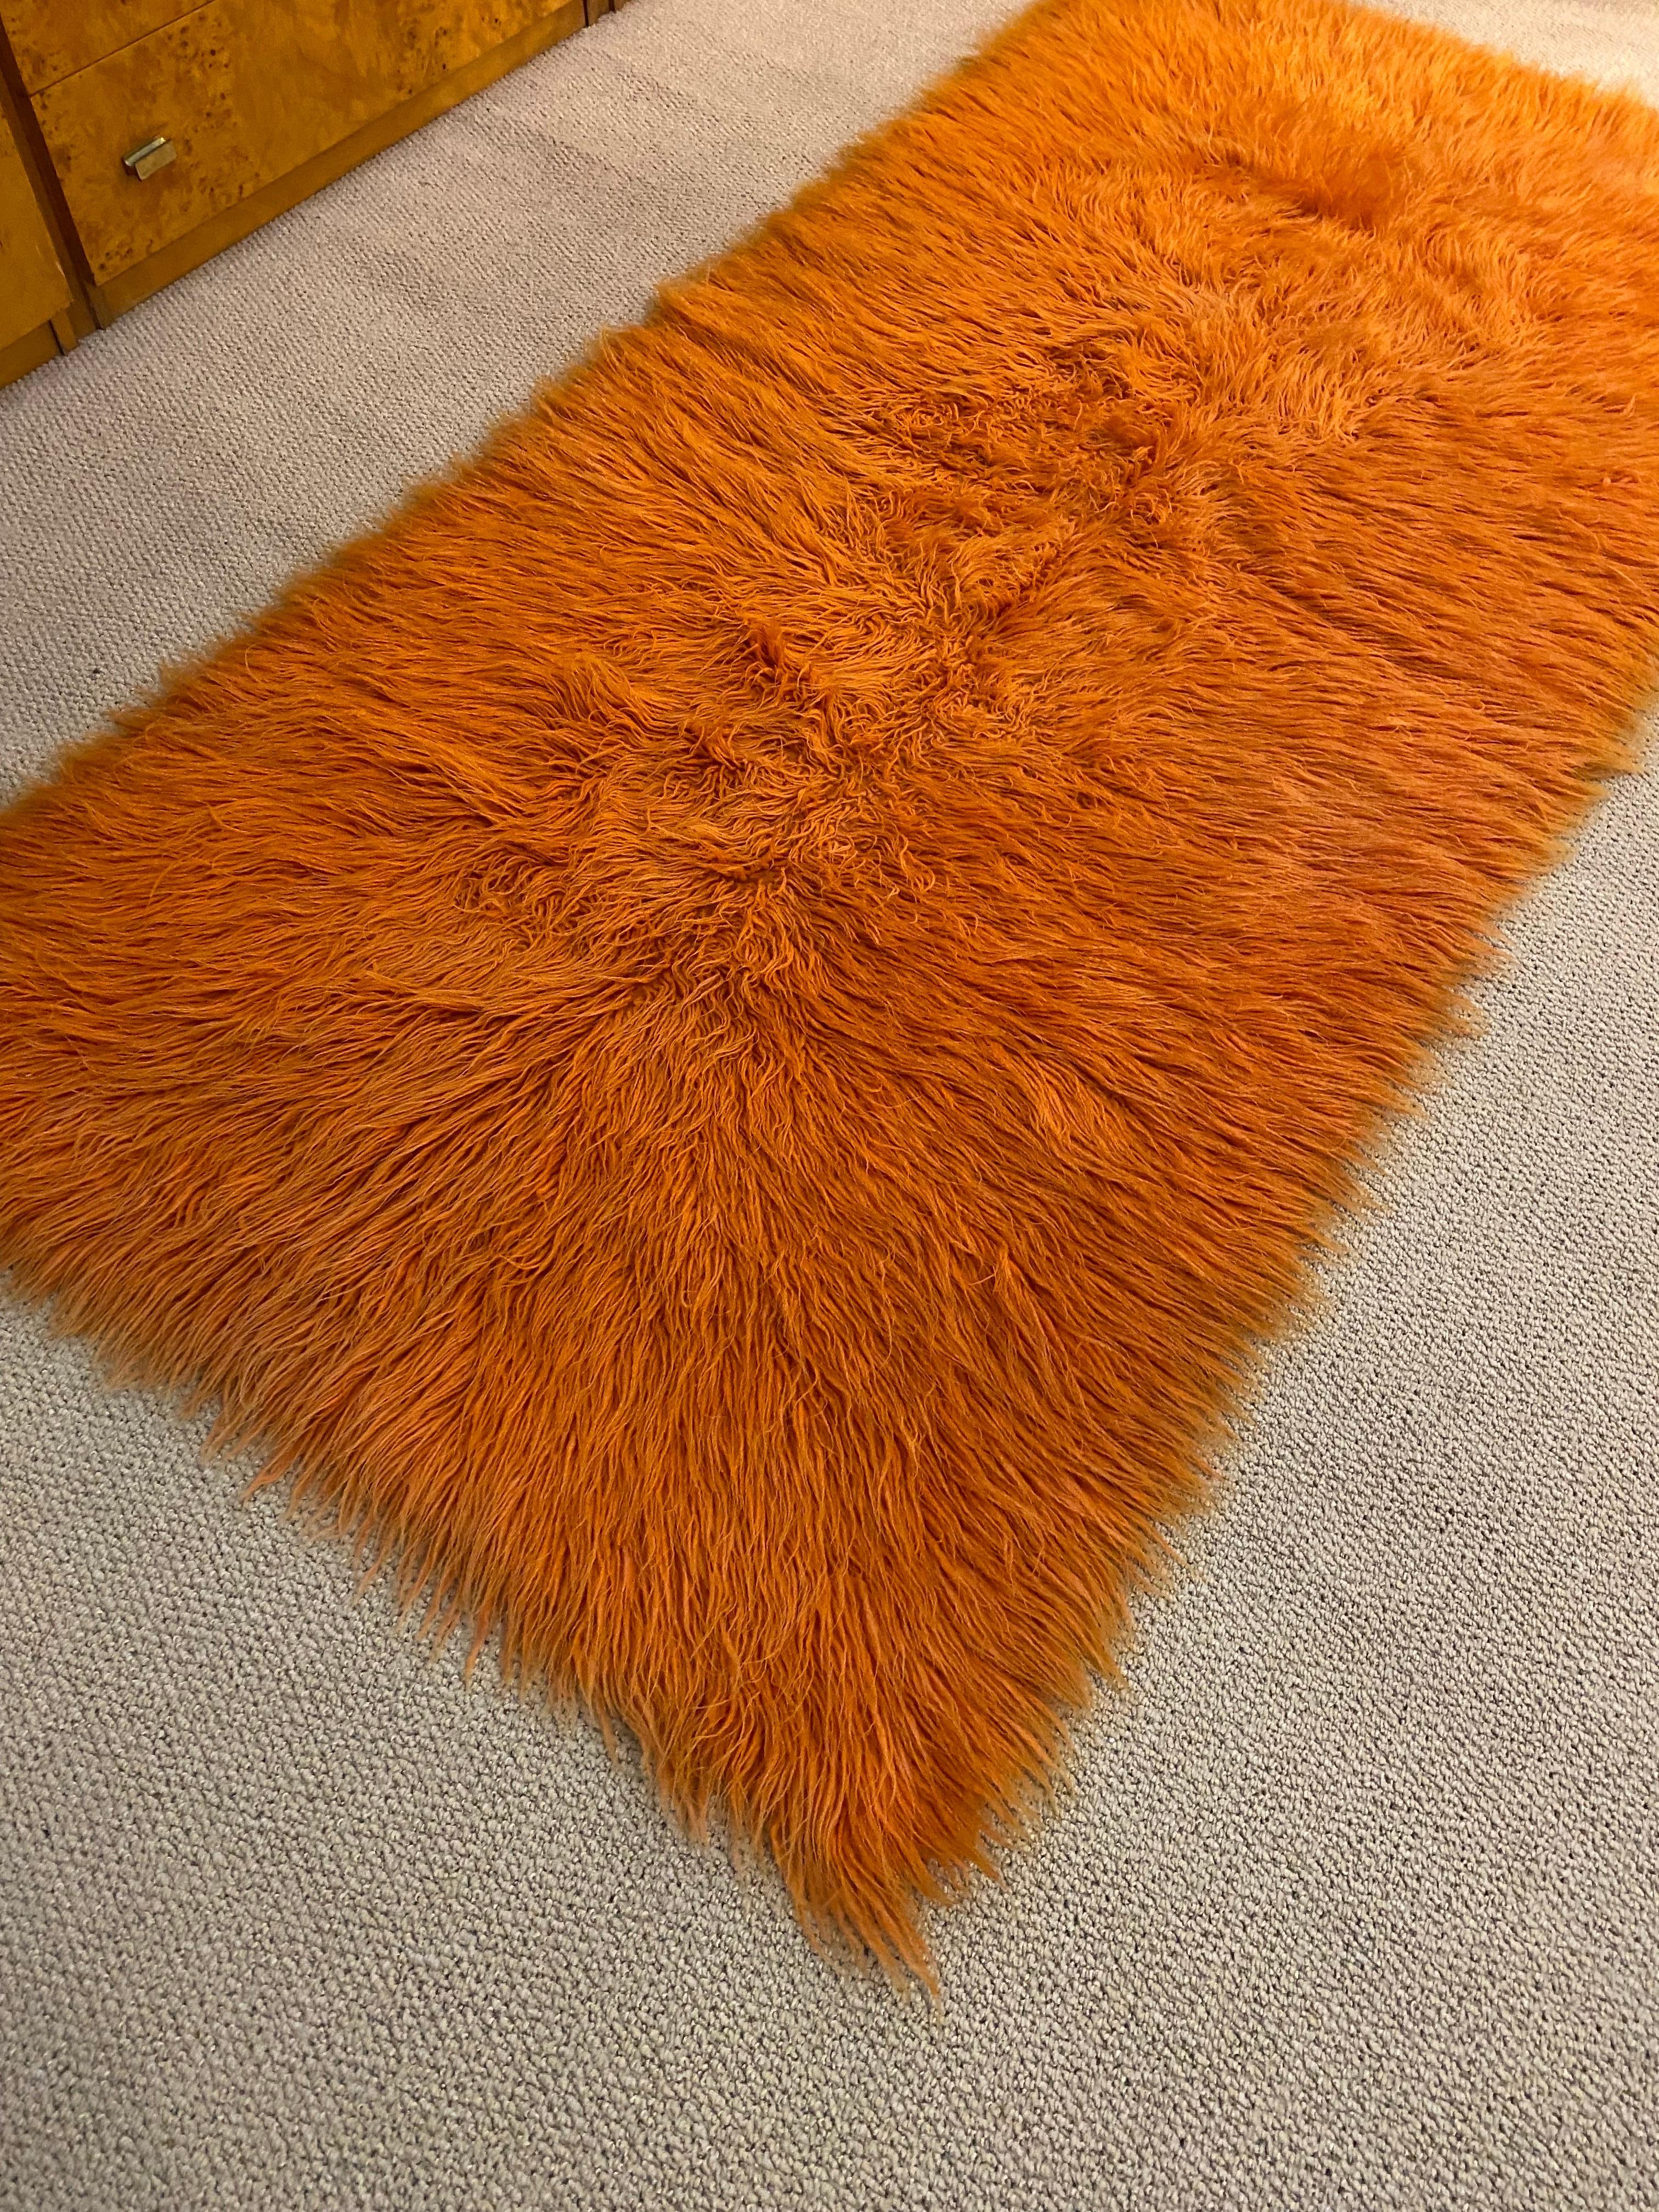 retro orange rug